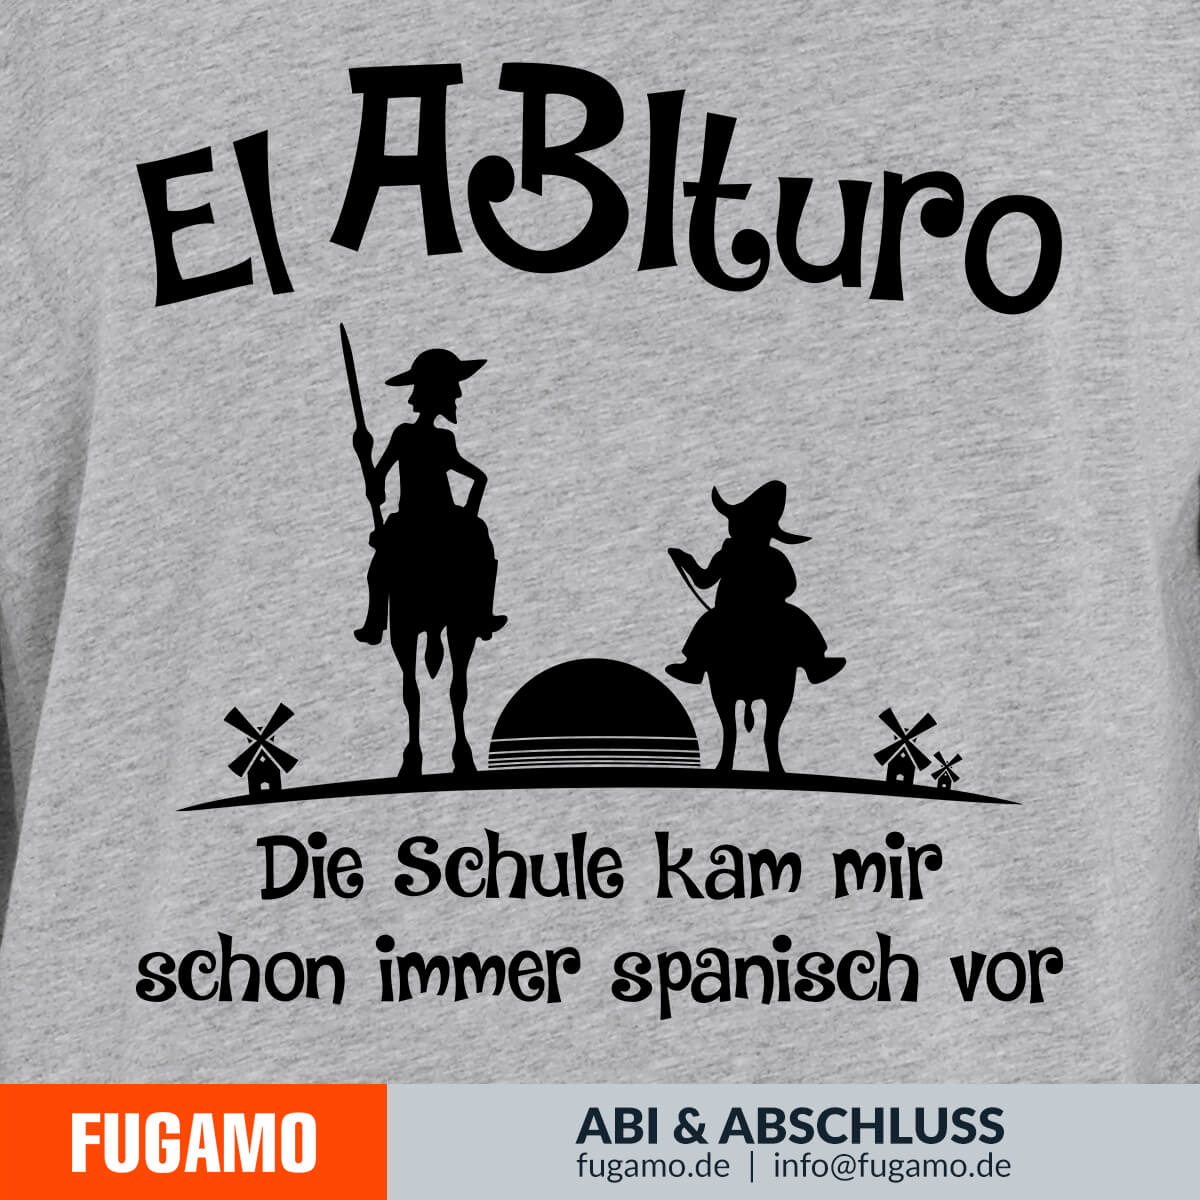 El ABIturo - 01 - Die Schule kam mir schon immer spanisch vor